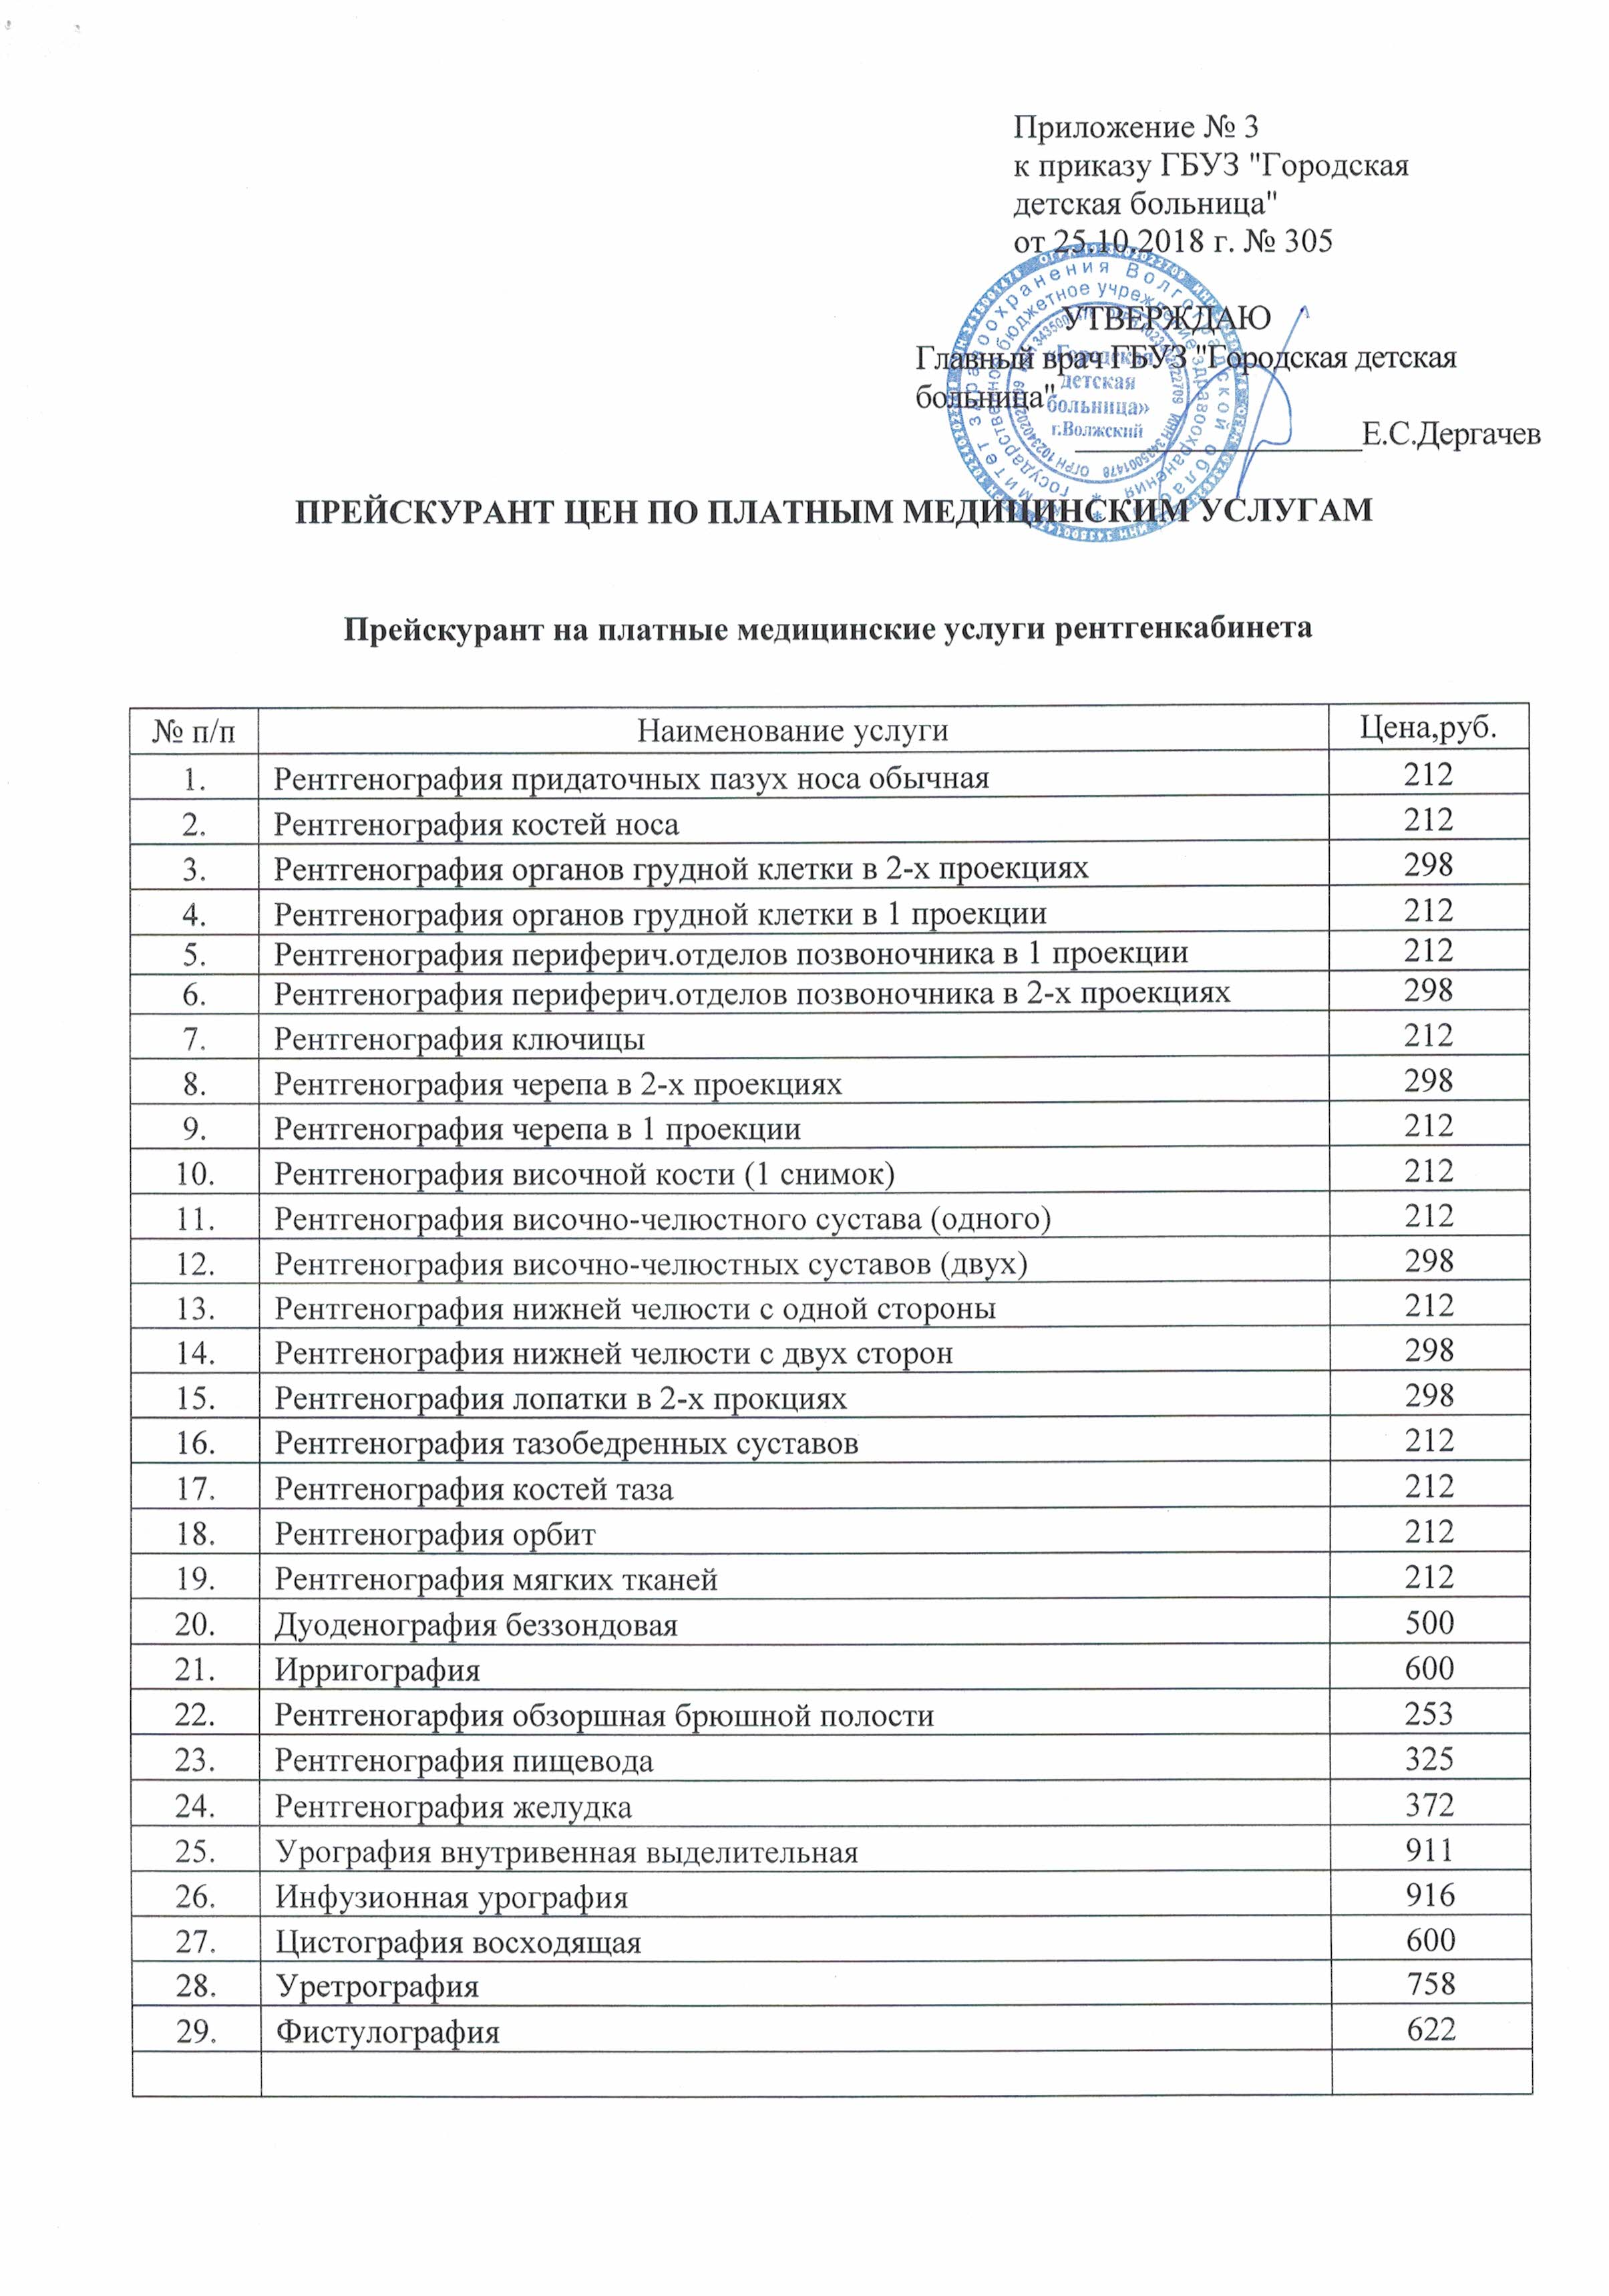 Областная больница регистратура платных услуг челябинск